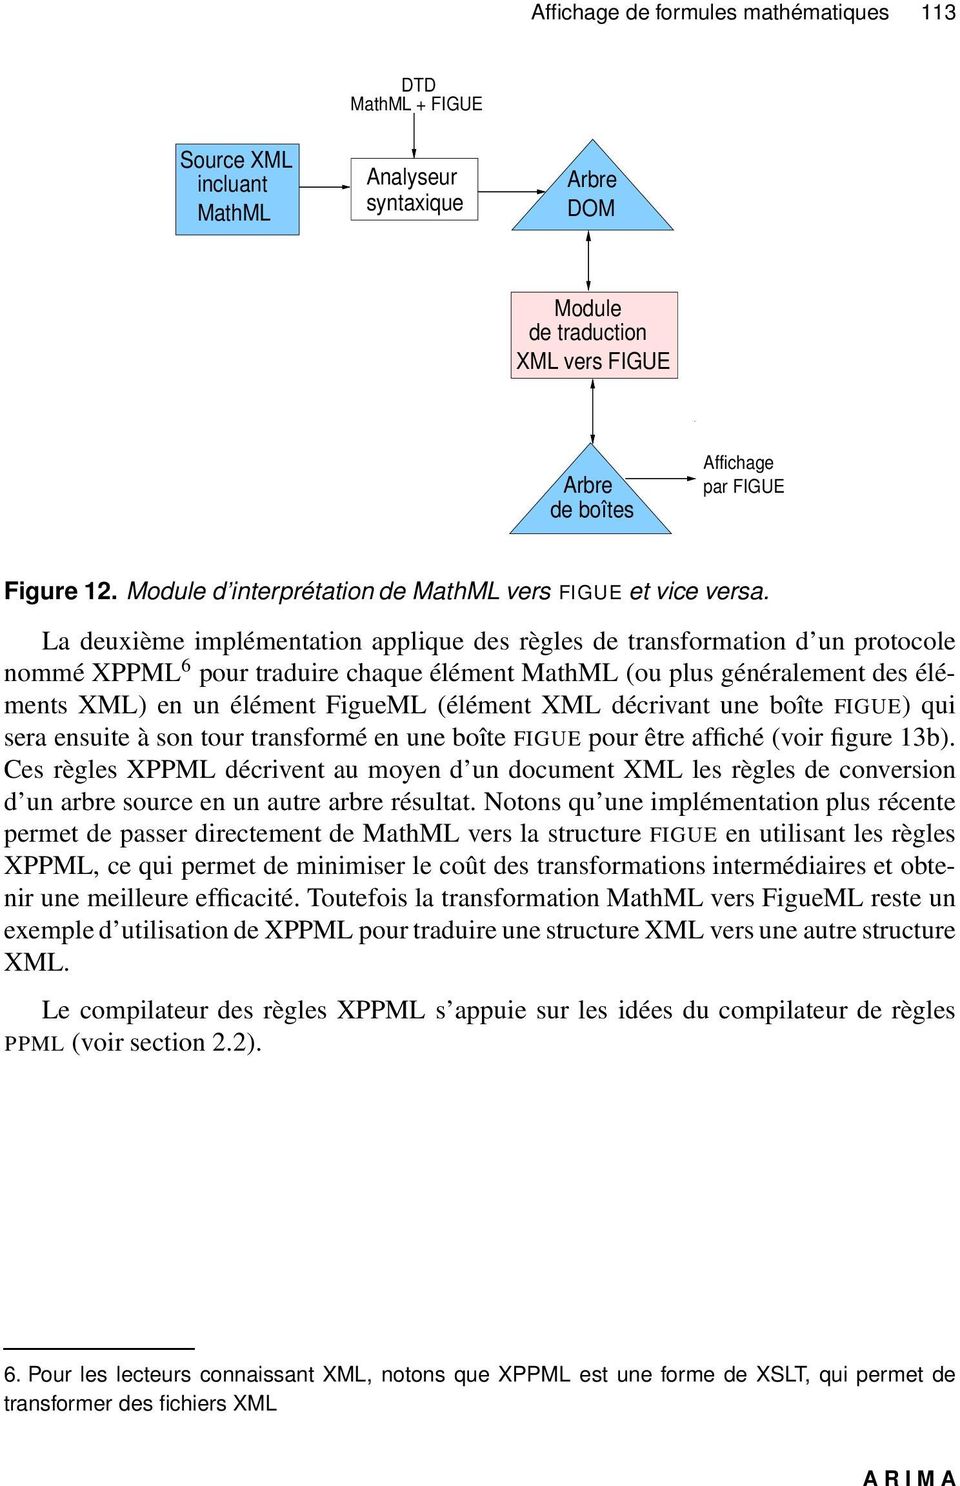 La deuxième implémentation applique des règles de transformation d un protocole nommé XPPML 6 pour traduire chaque élément MathML (ou plus généralement des éléments XML) en un élément FigueML